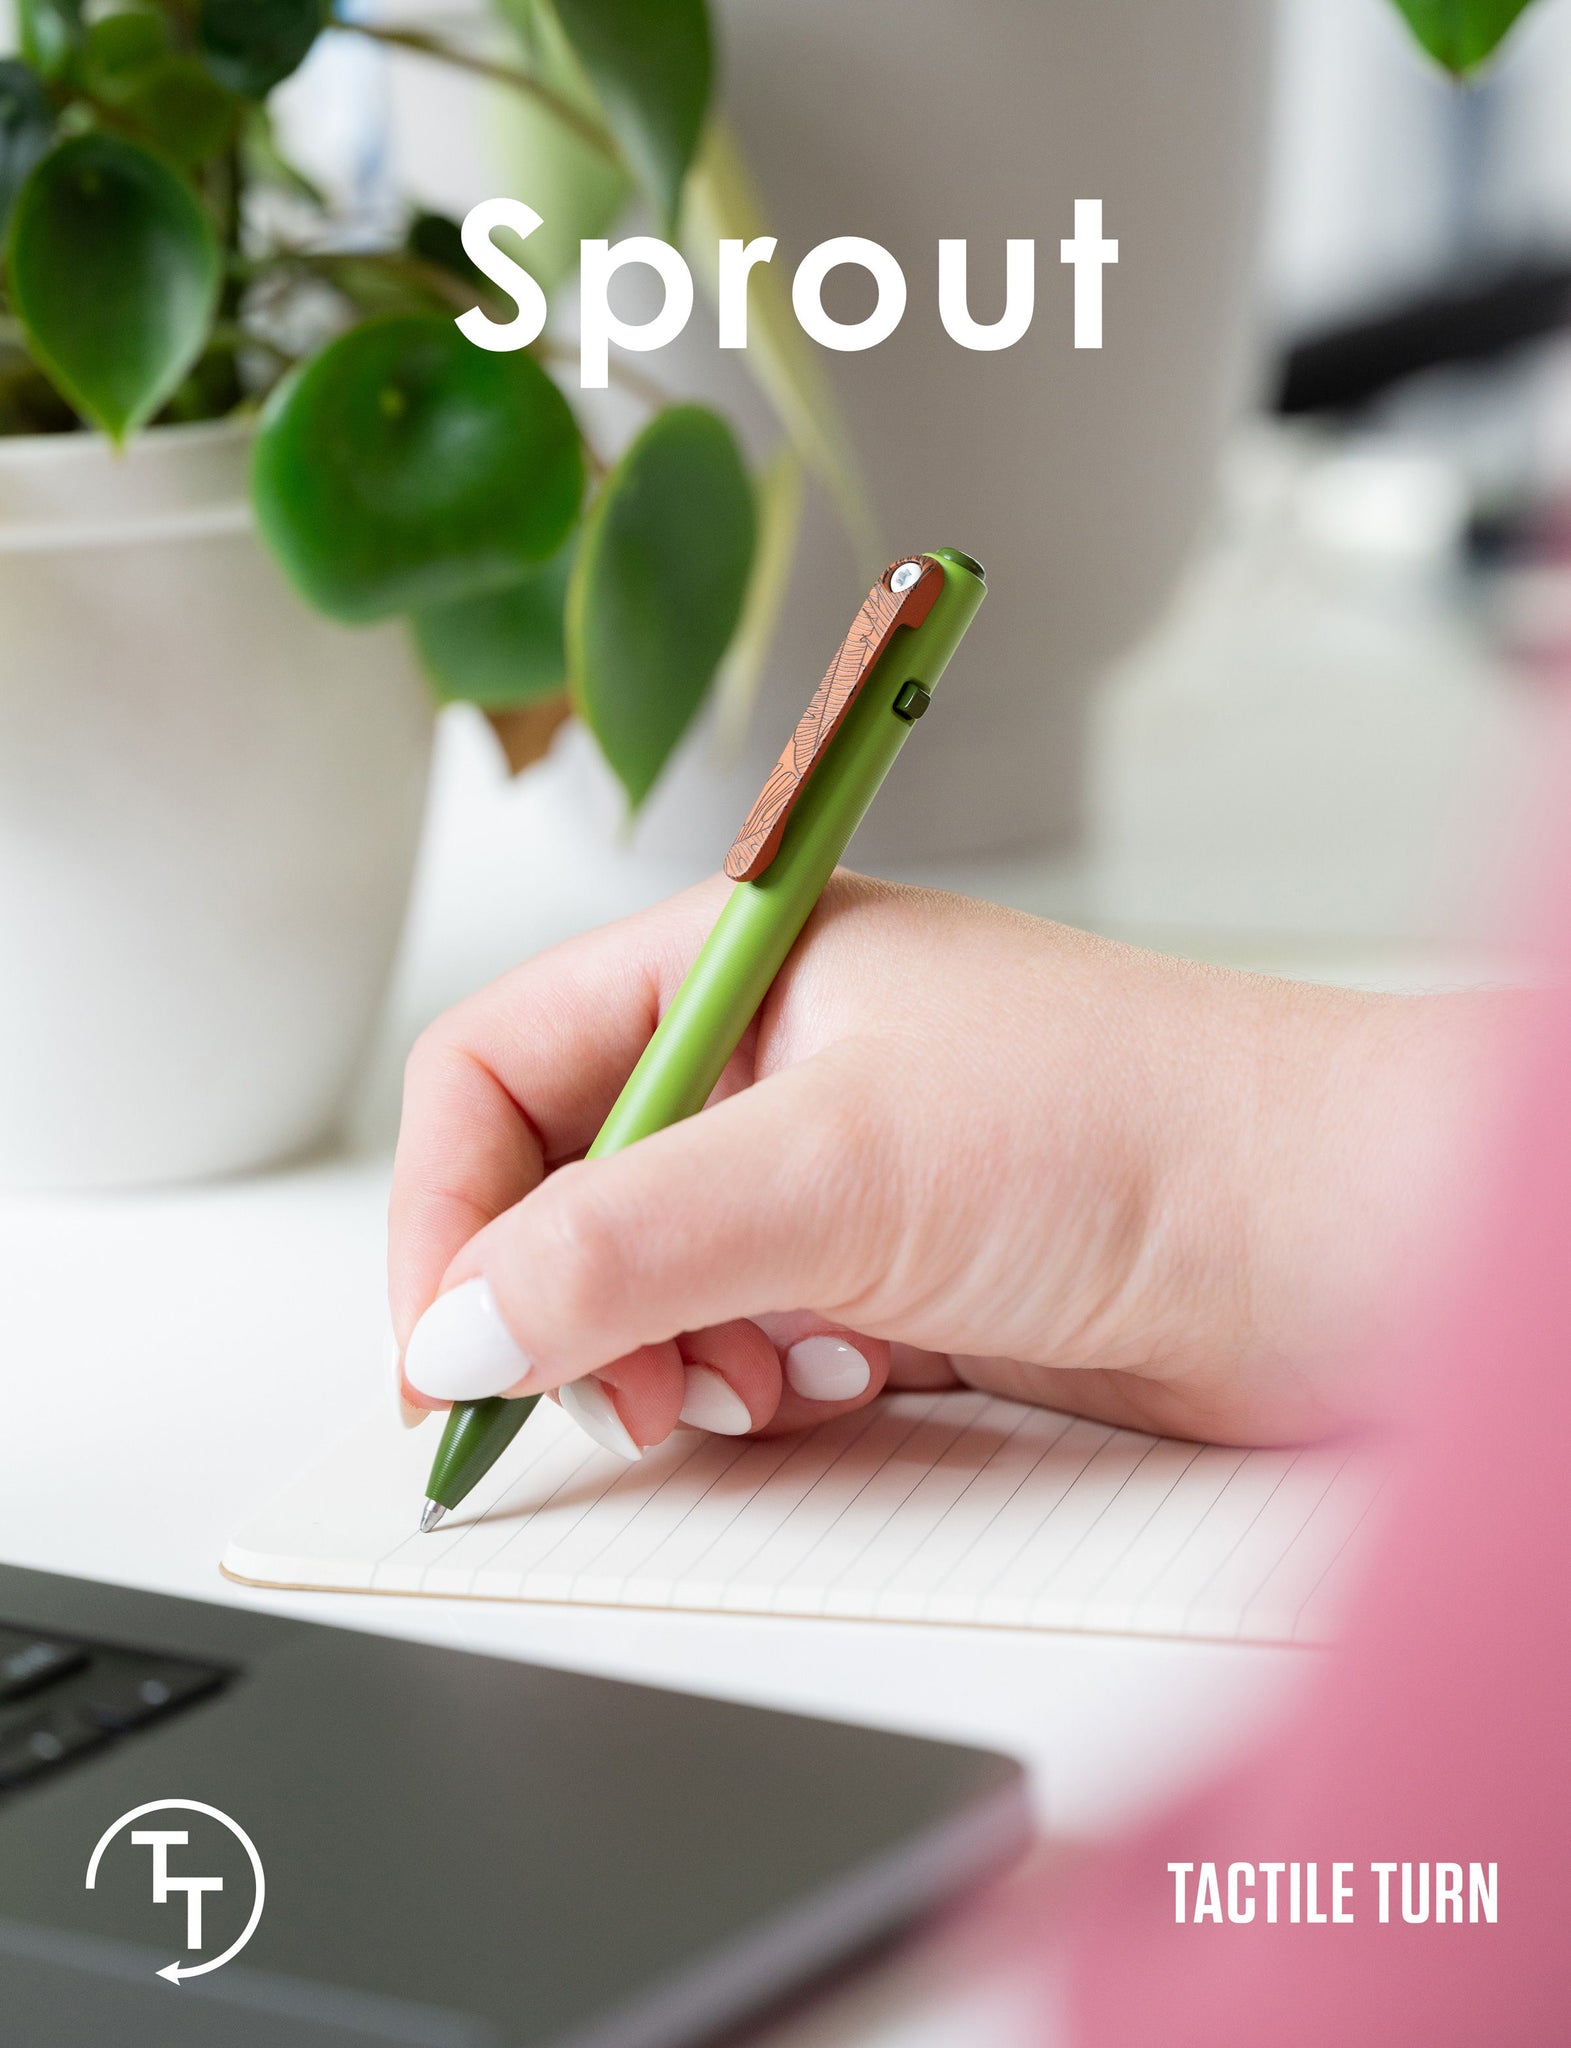 Tactile Turn – Sprout (Saisonneuheit)